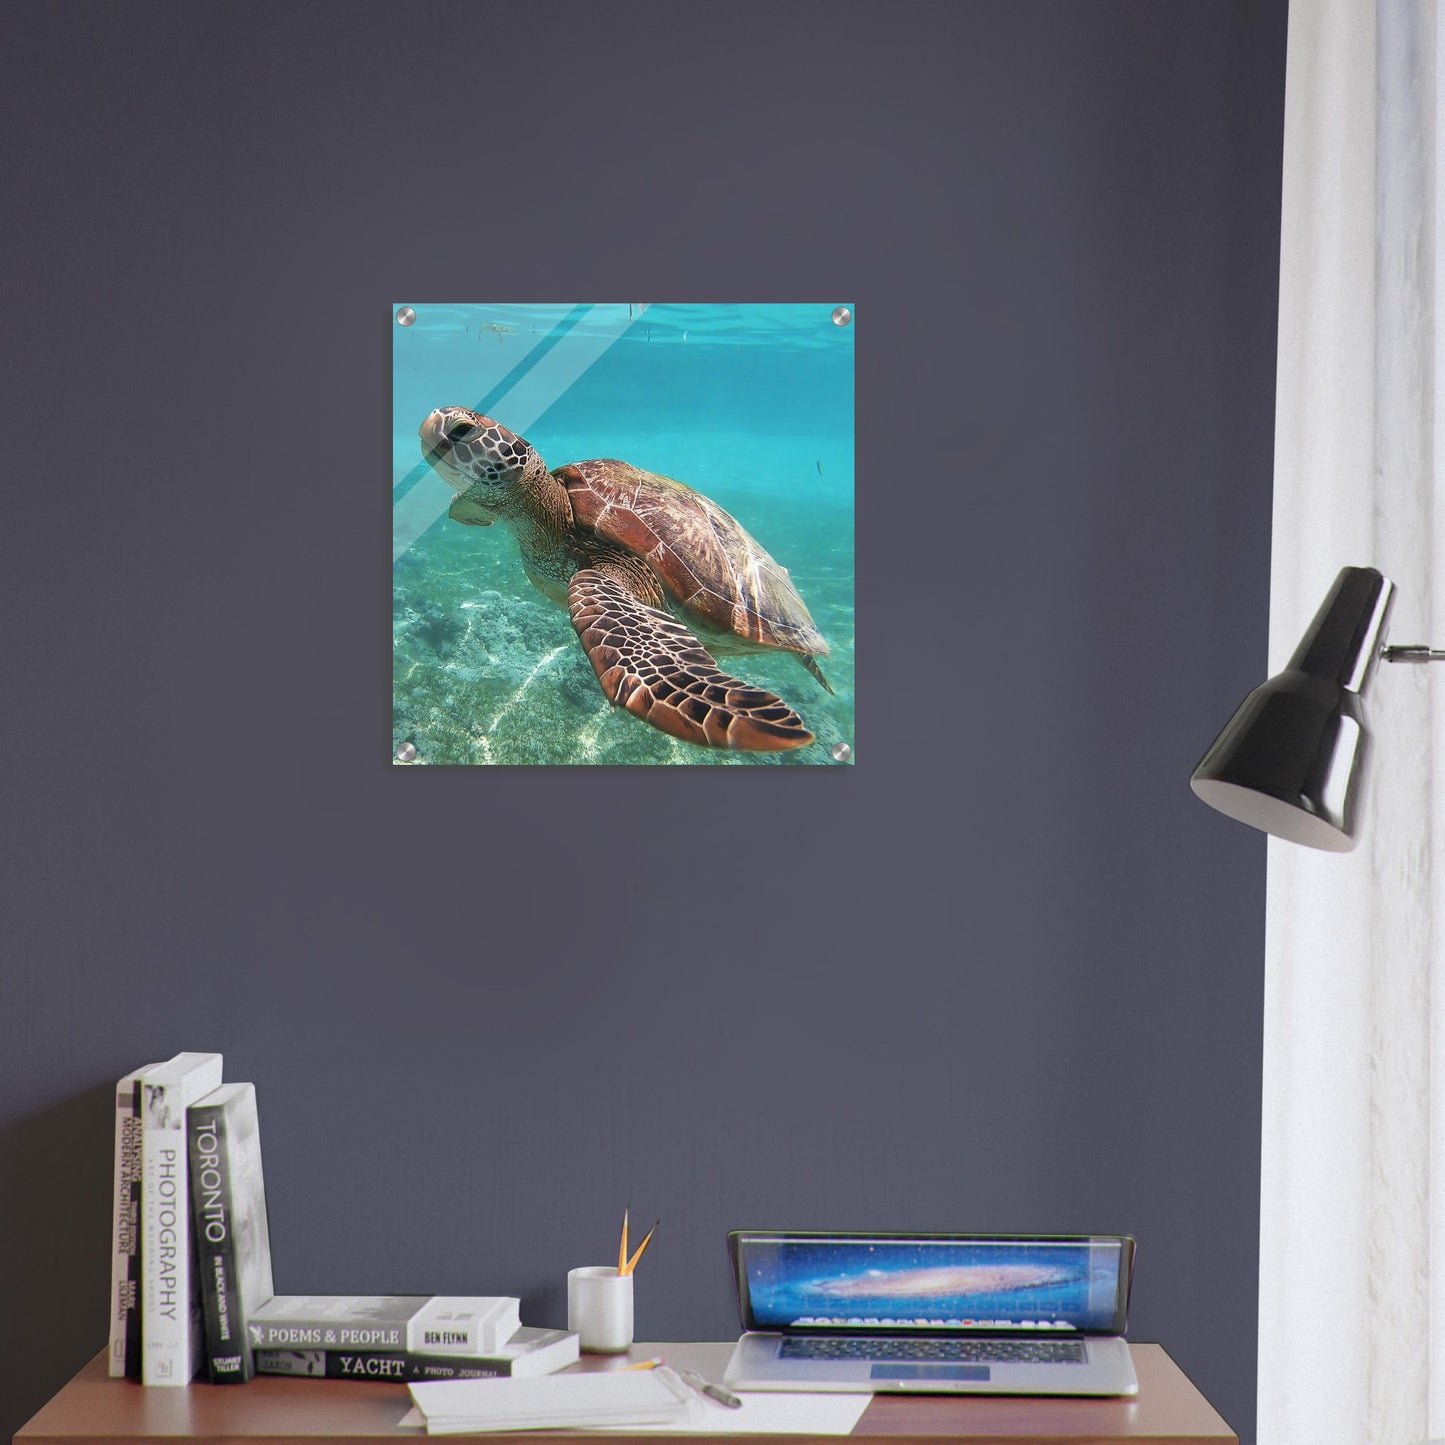 Swimming Sea Turtle Acrylic Wall Print on Sea Turtle